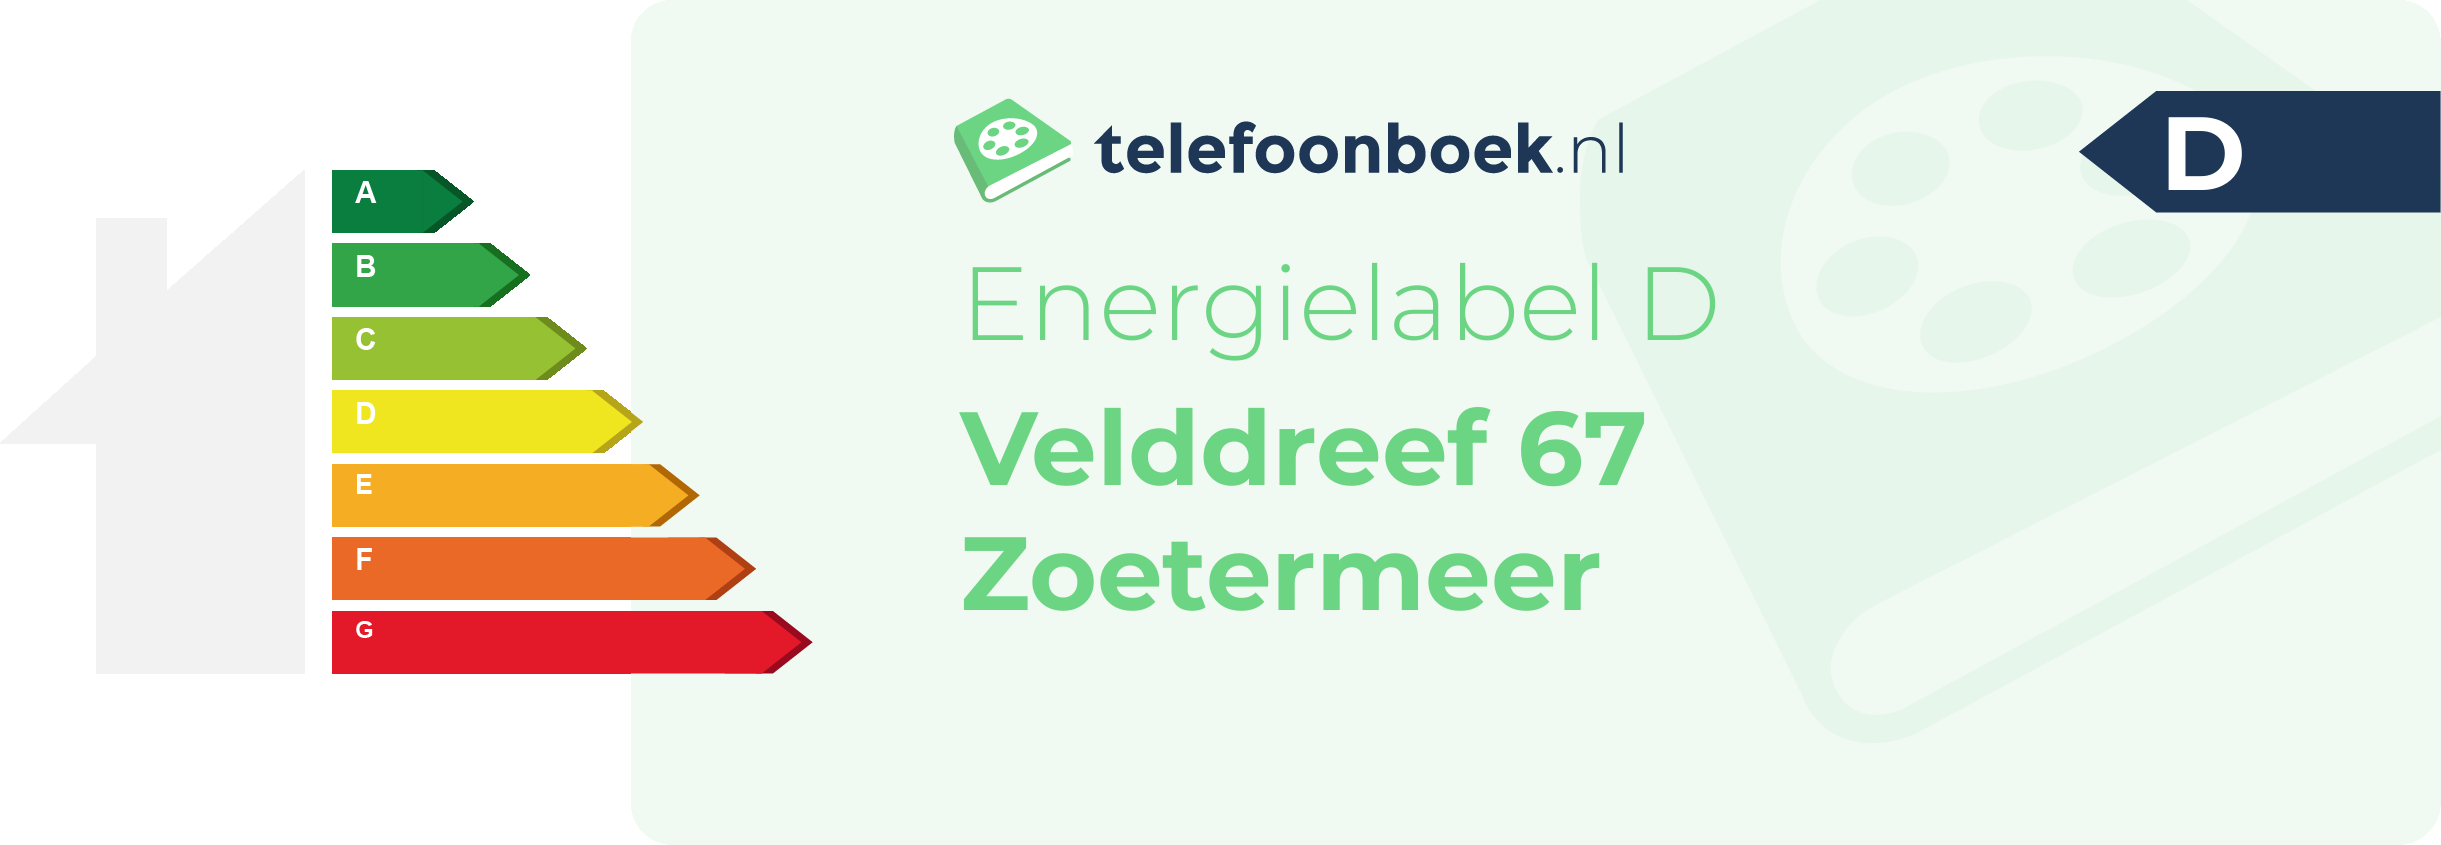 Energielabel Velddreef 67 Zoetermeer